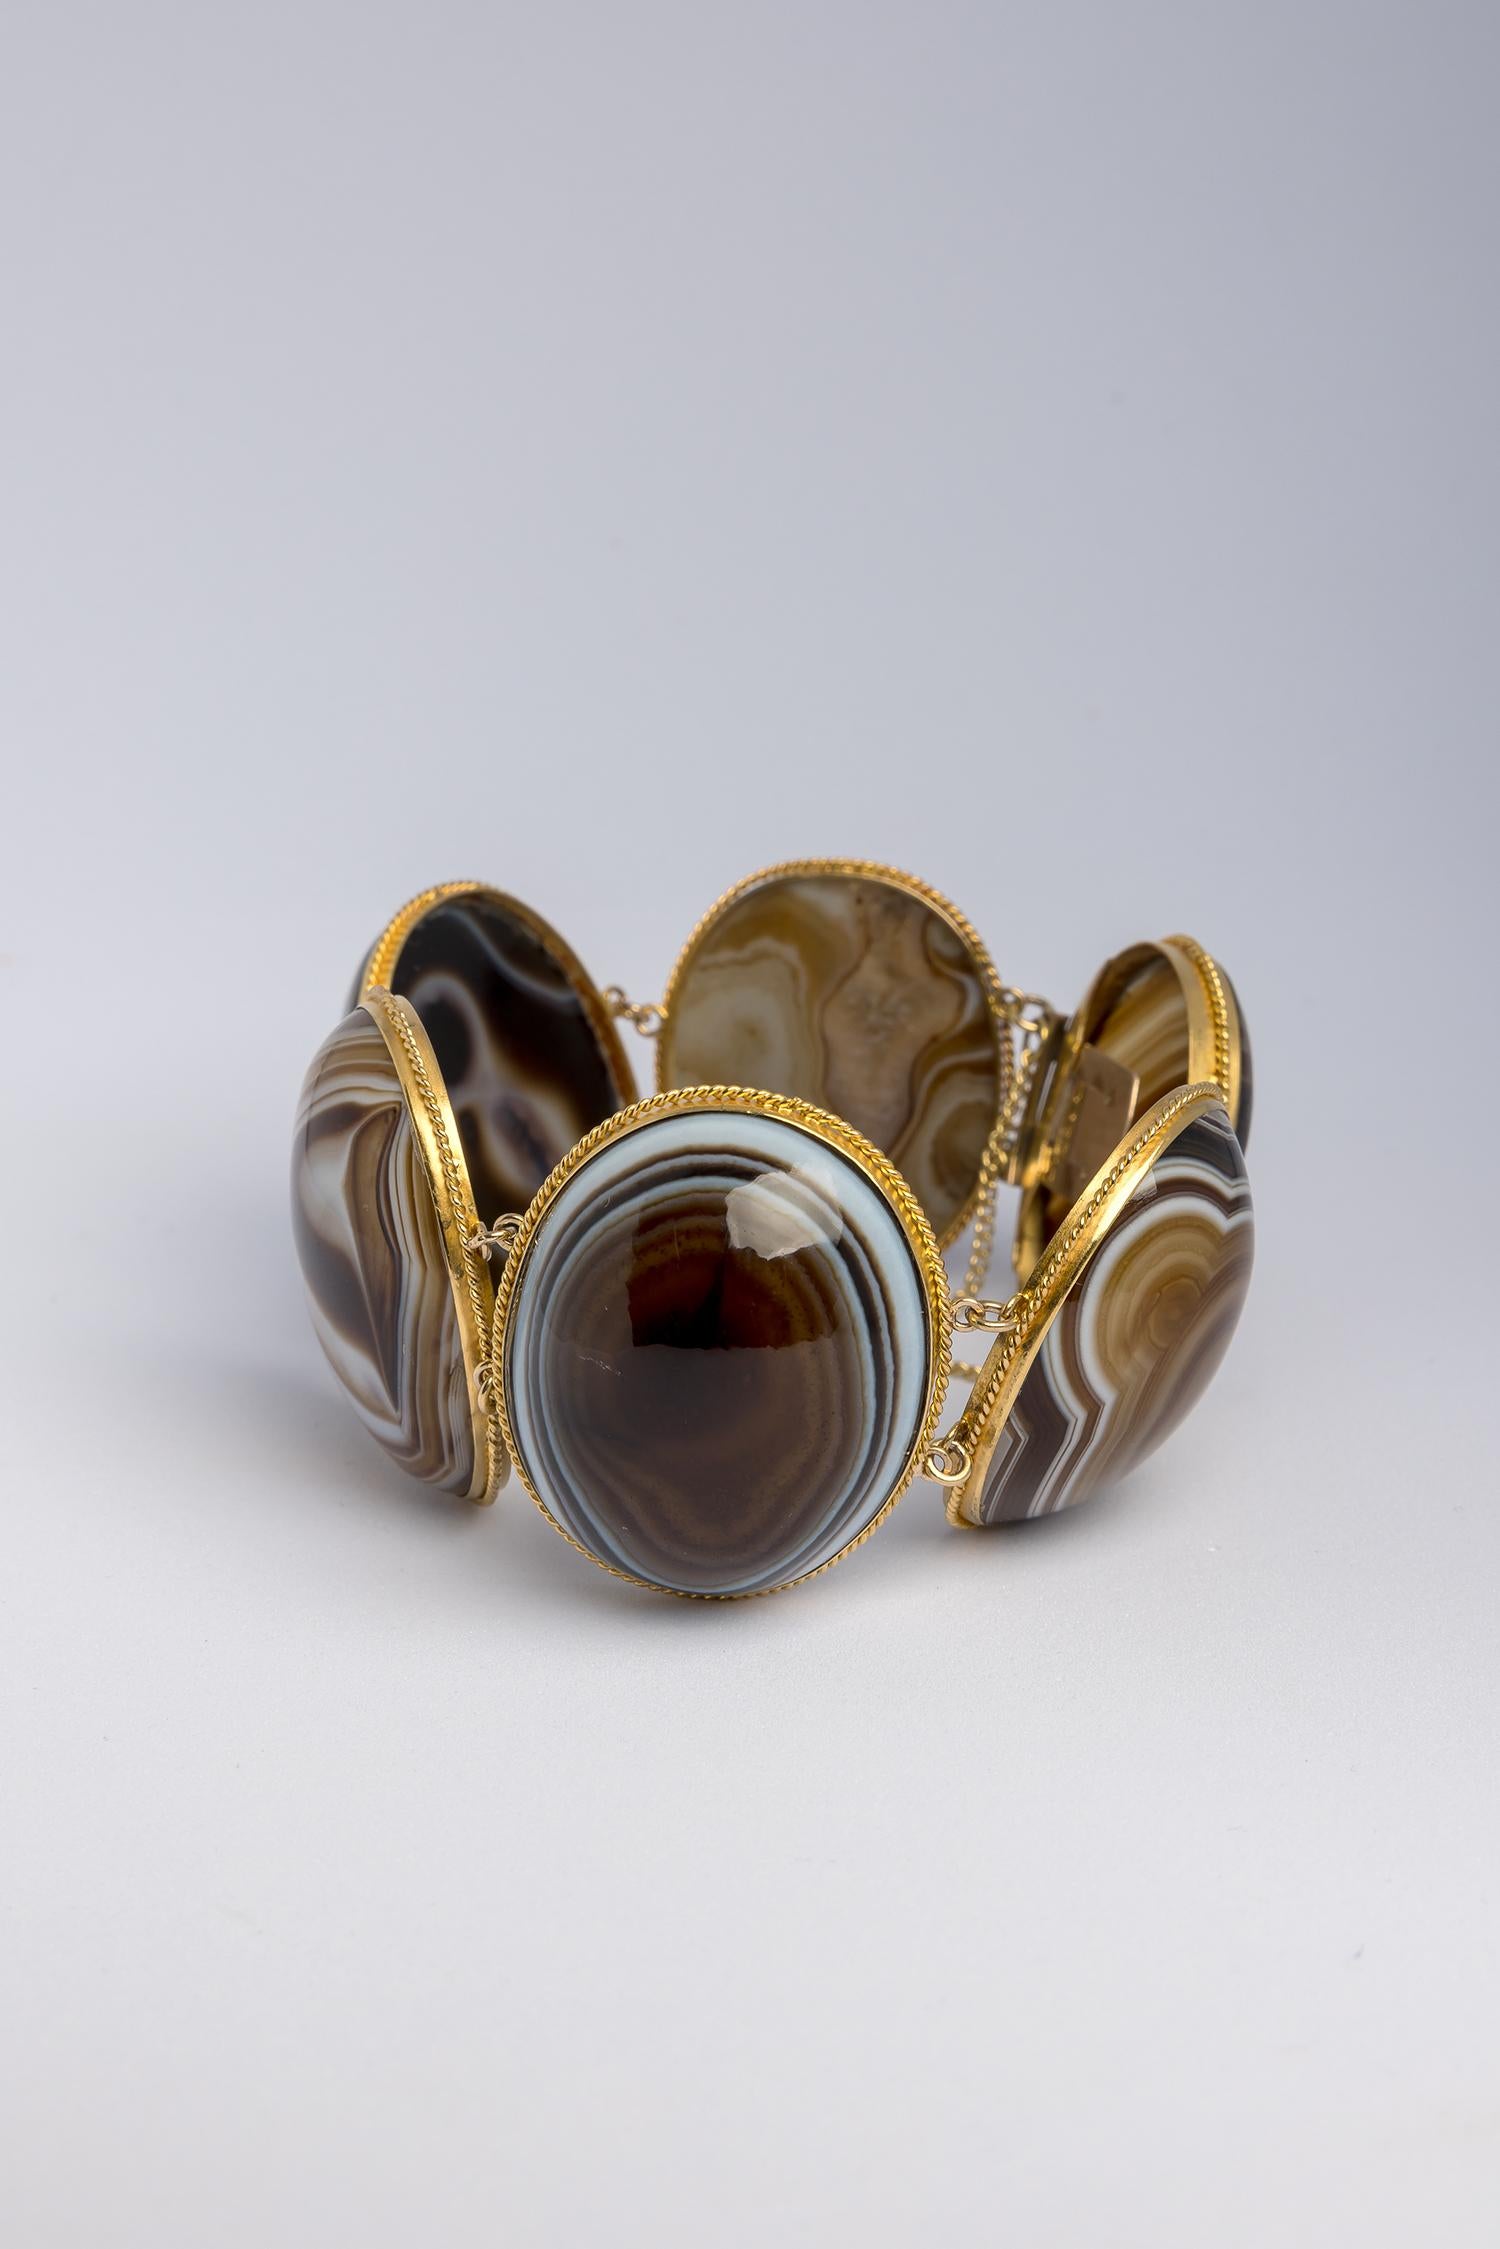 Dramatisches viktorianisches Grand-Tour-Armband aus Achat. 

Hergestellt als Grand-Tour-Souvenir, auch heute noch sehr begehrt.

Dieses Armband aus dem 19. Jahrhundert zeichnet sich durch hervorragend gearbeitete ovale Cabochon-Steine aus, die die